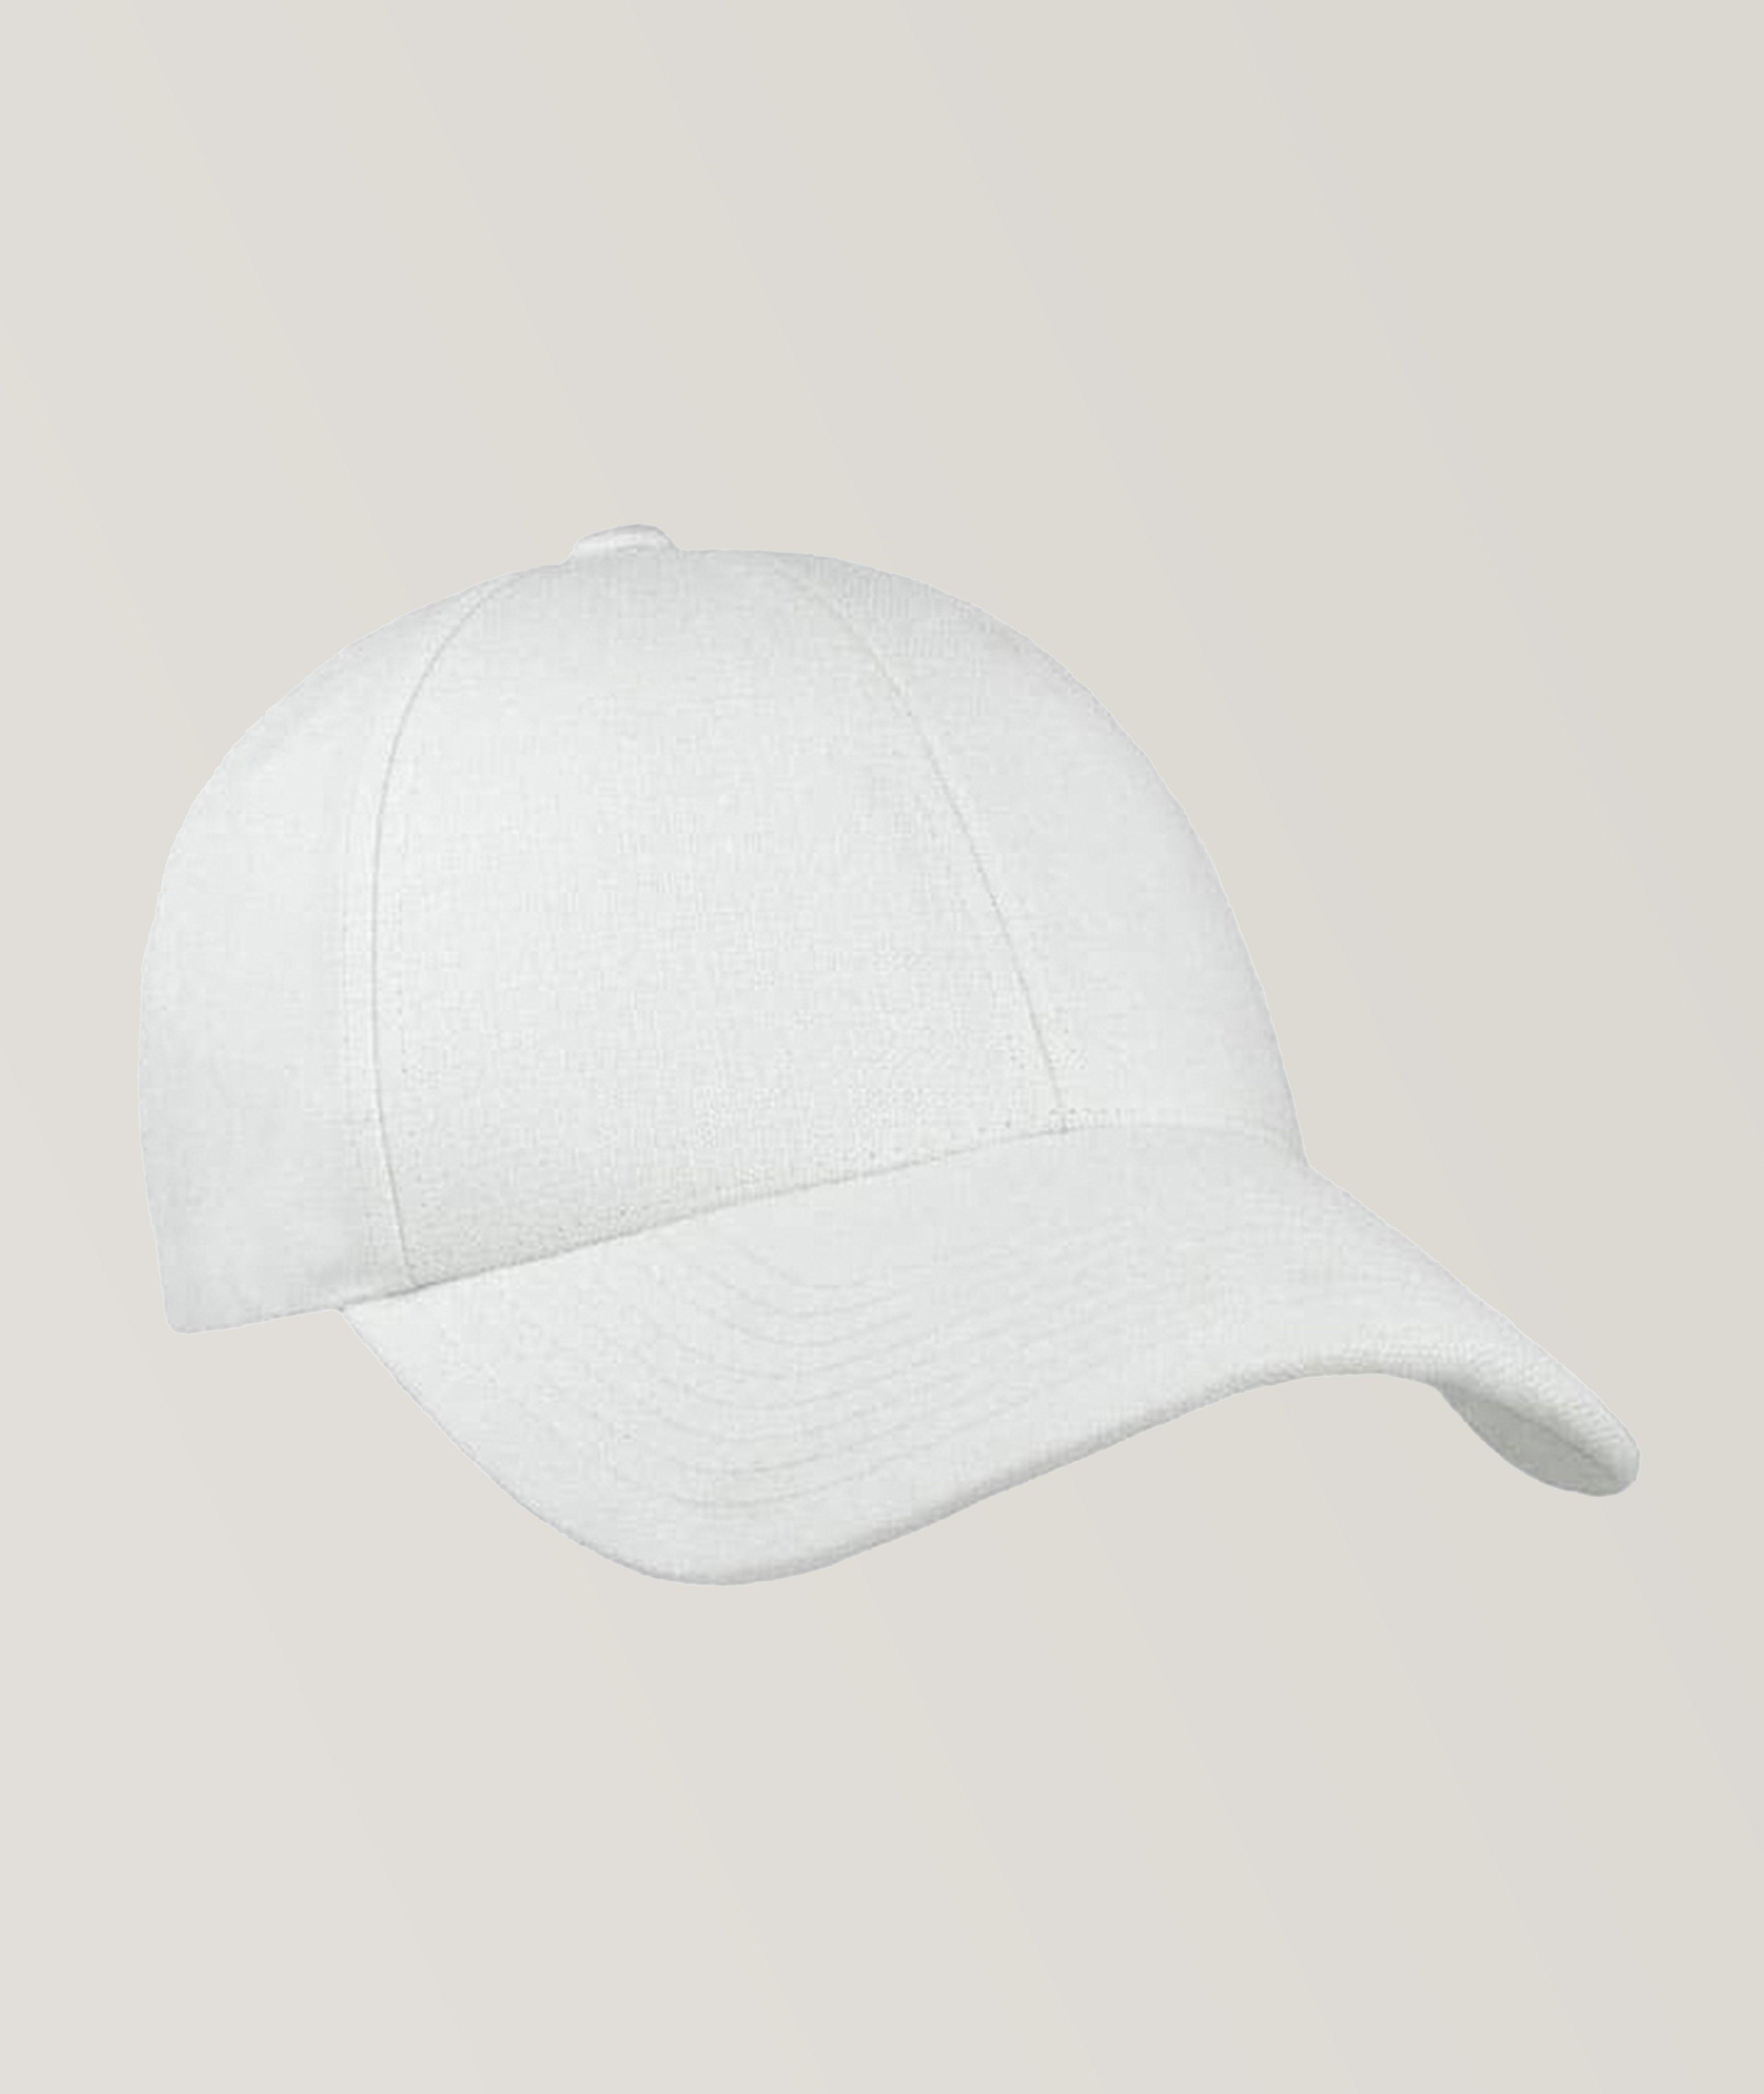 Shell Linen Baseball Cap image 0